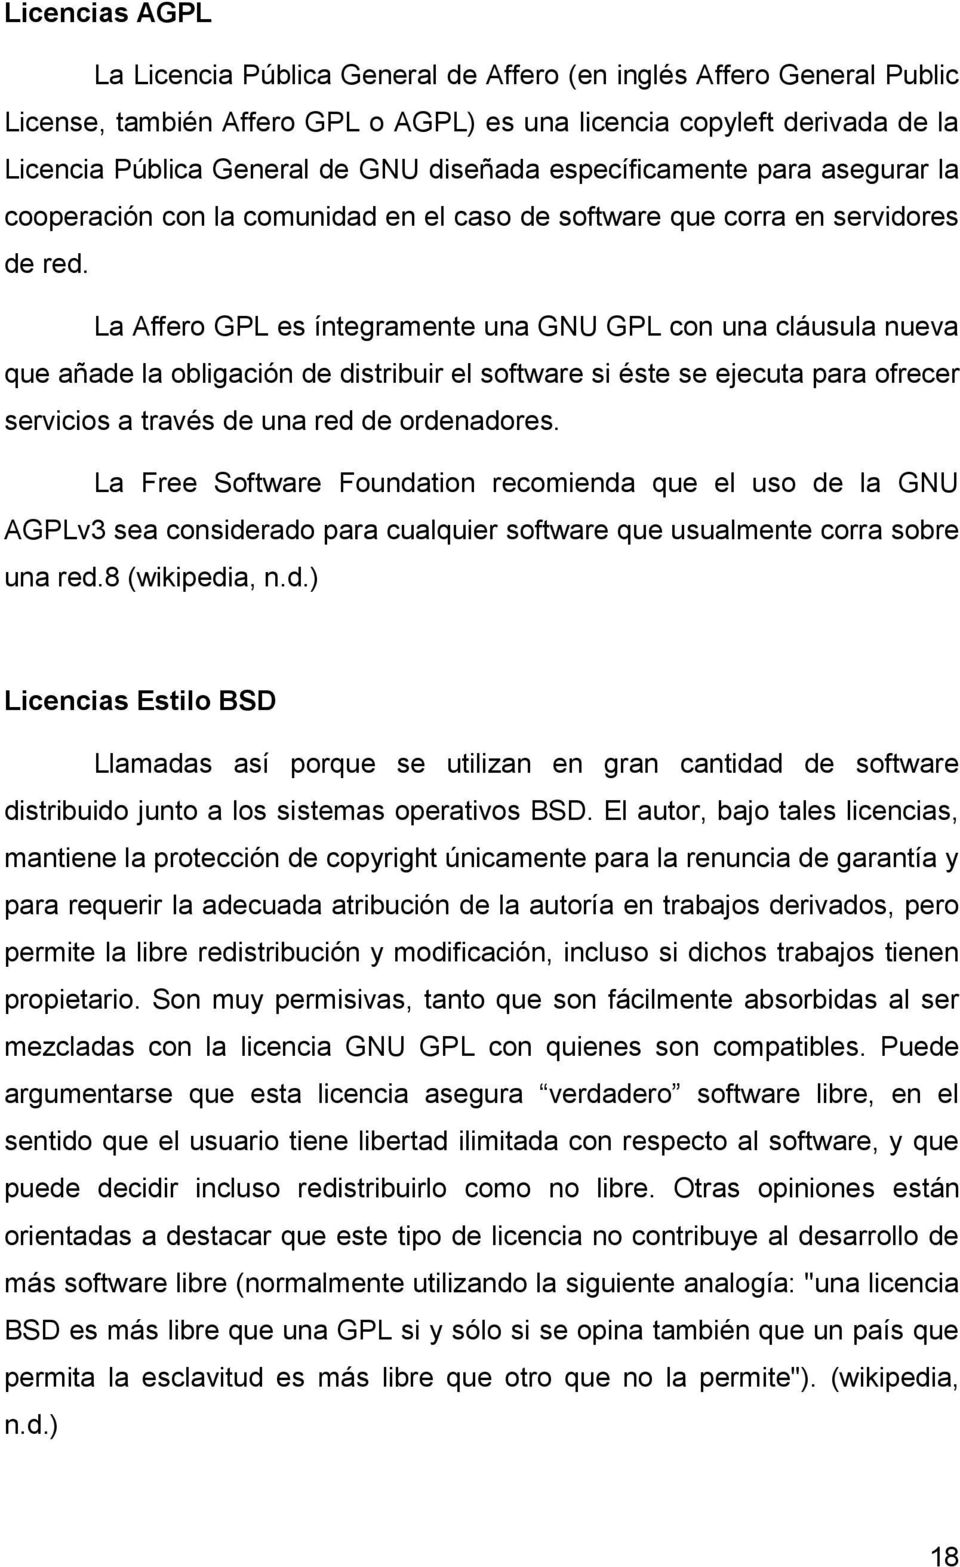 La Affero GPL es íntegramente una GNU GPL con una cláusula nueva que añade la obligación de distribuir el software si éste se ejecuta para ofrecer servicios a través de una red de ordenadores.